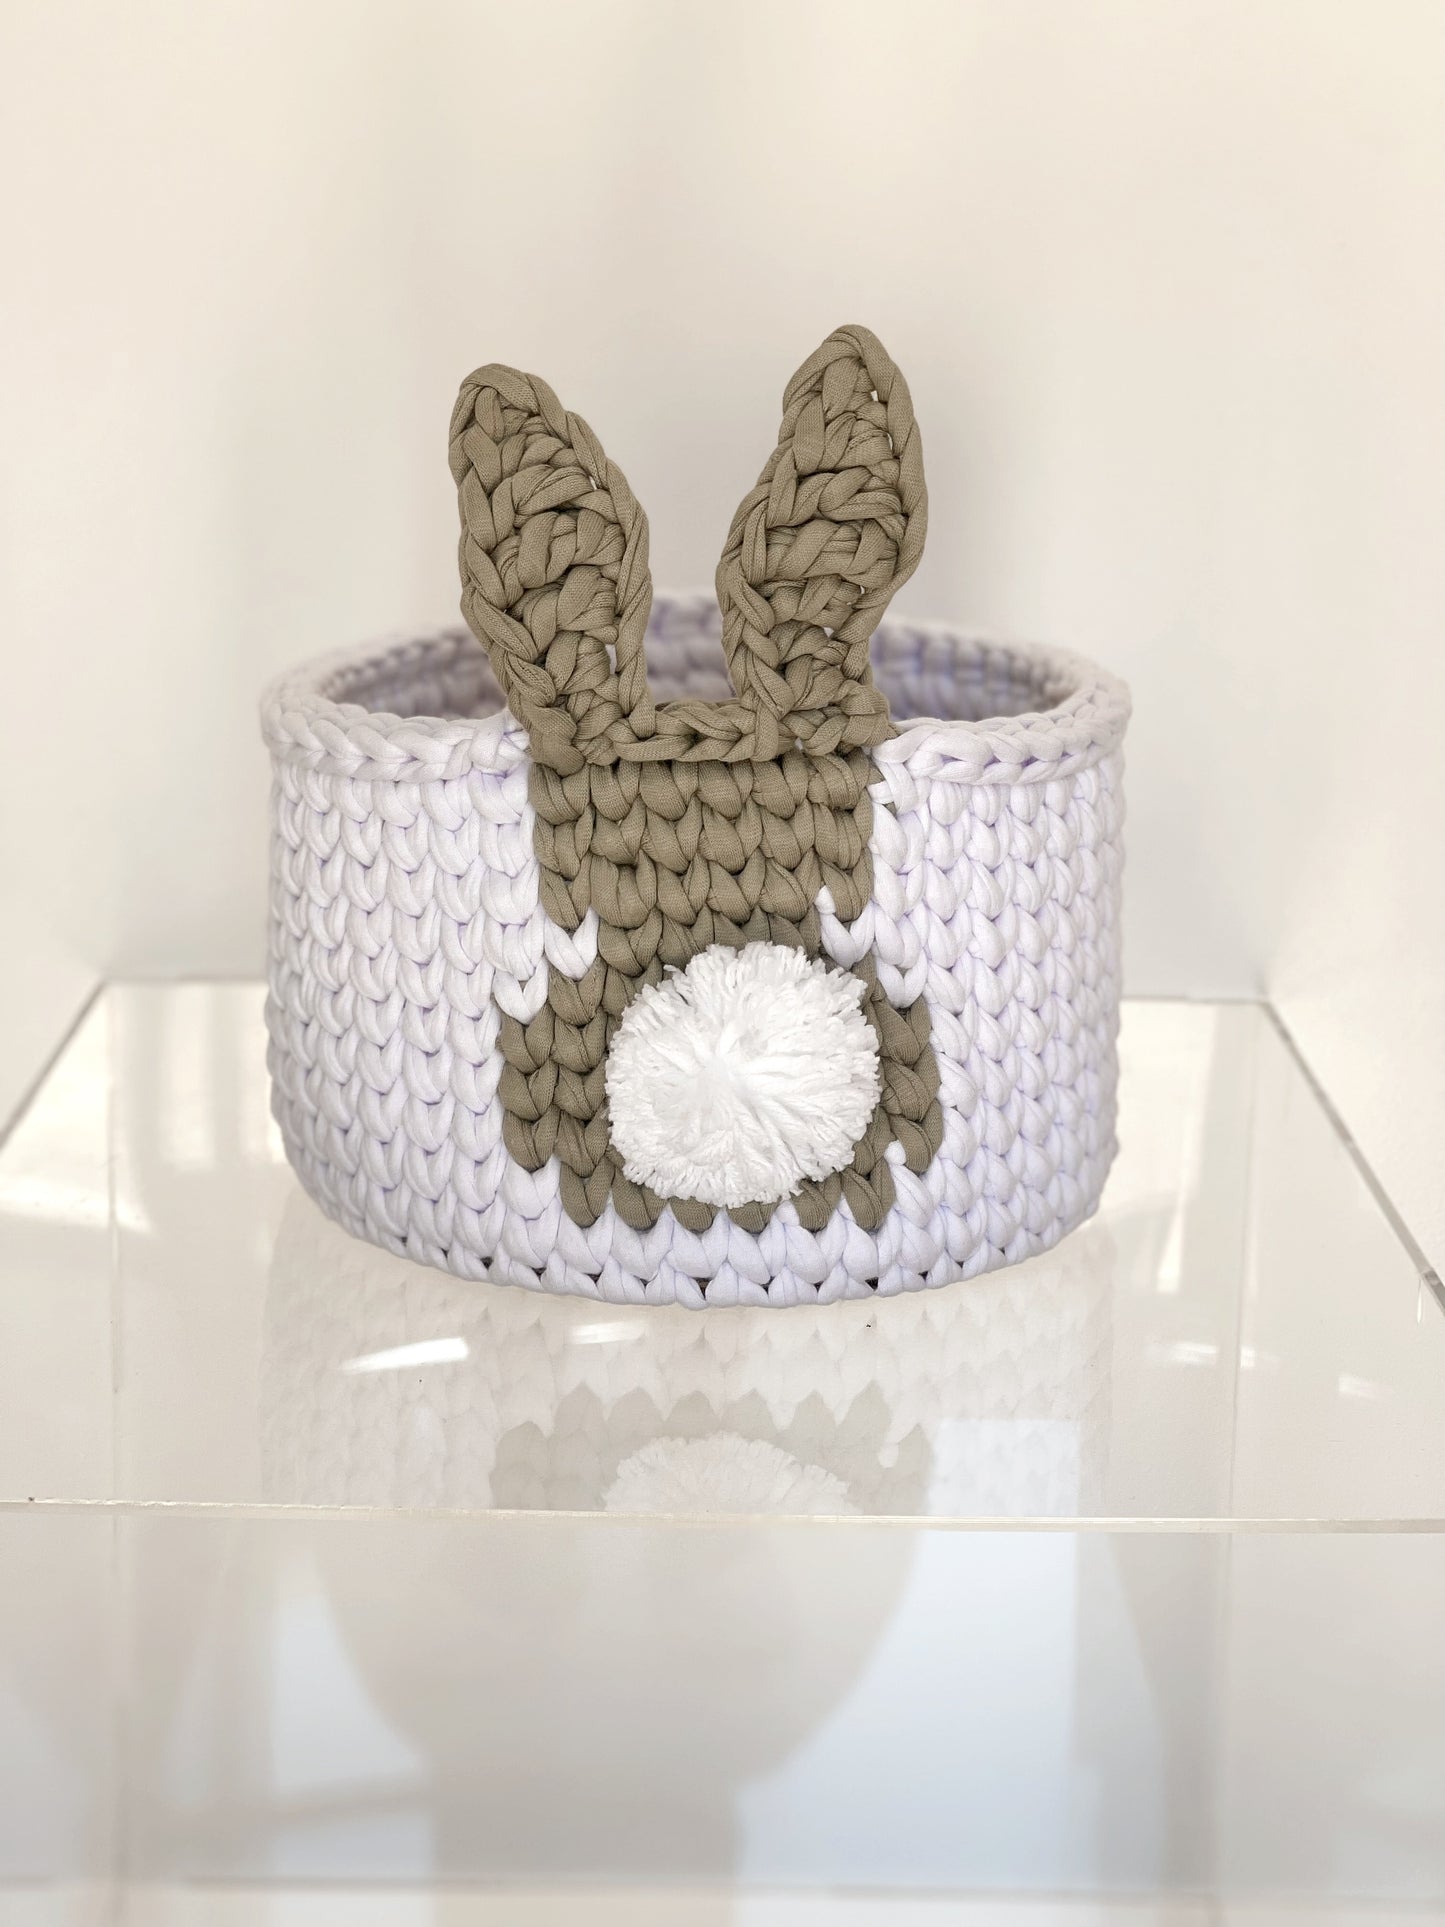 Furry Friend Crochet Baskets